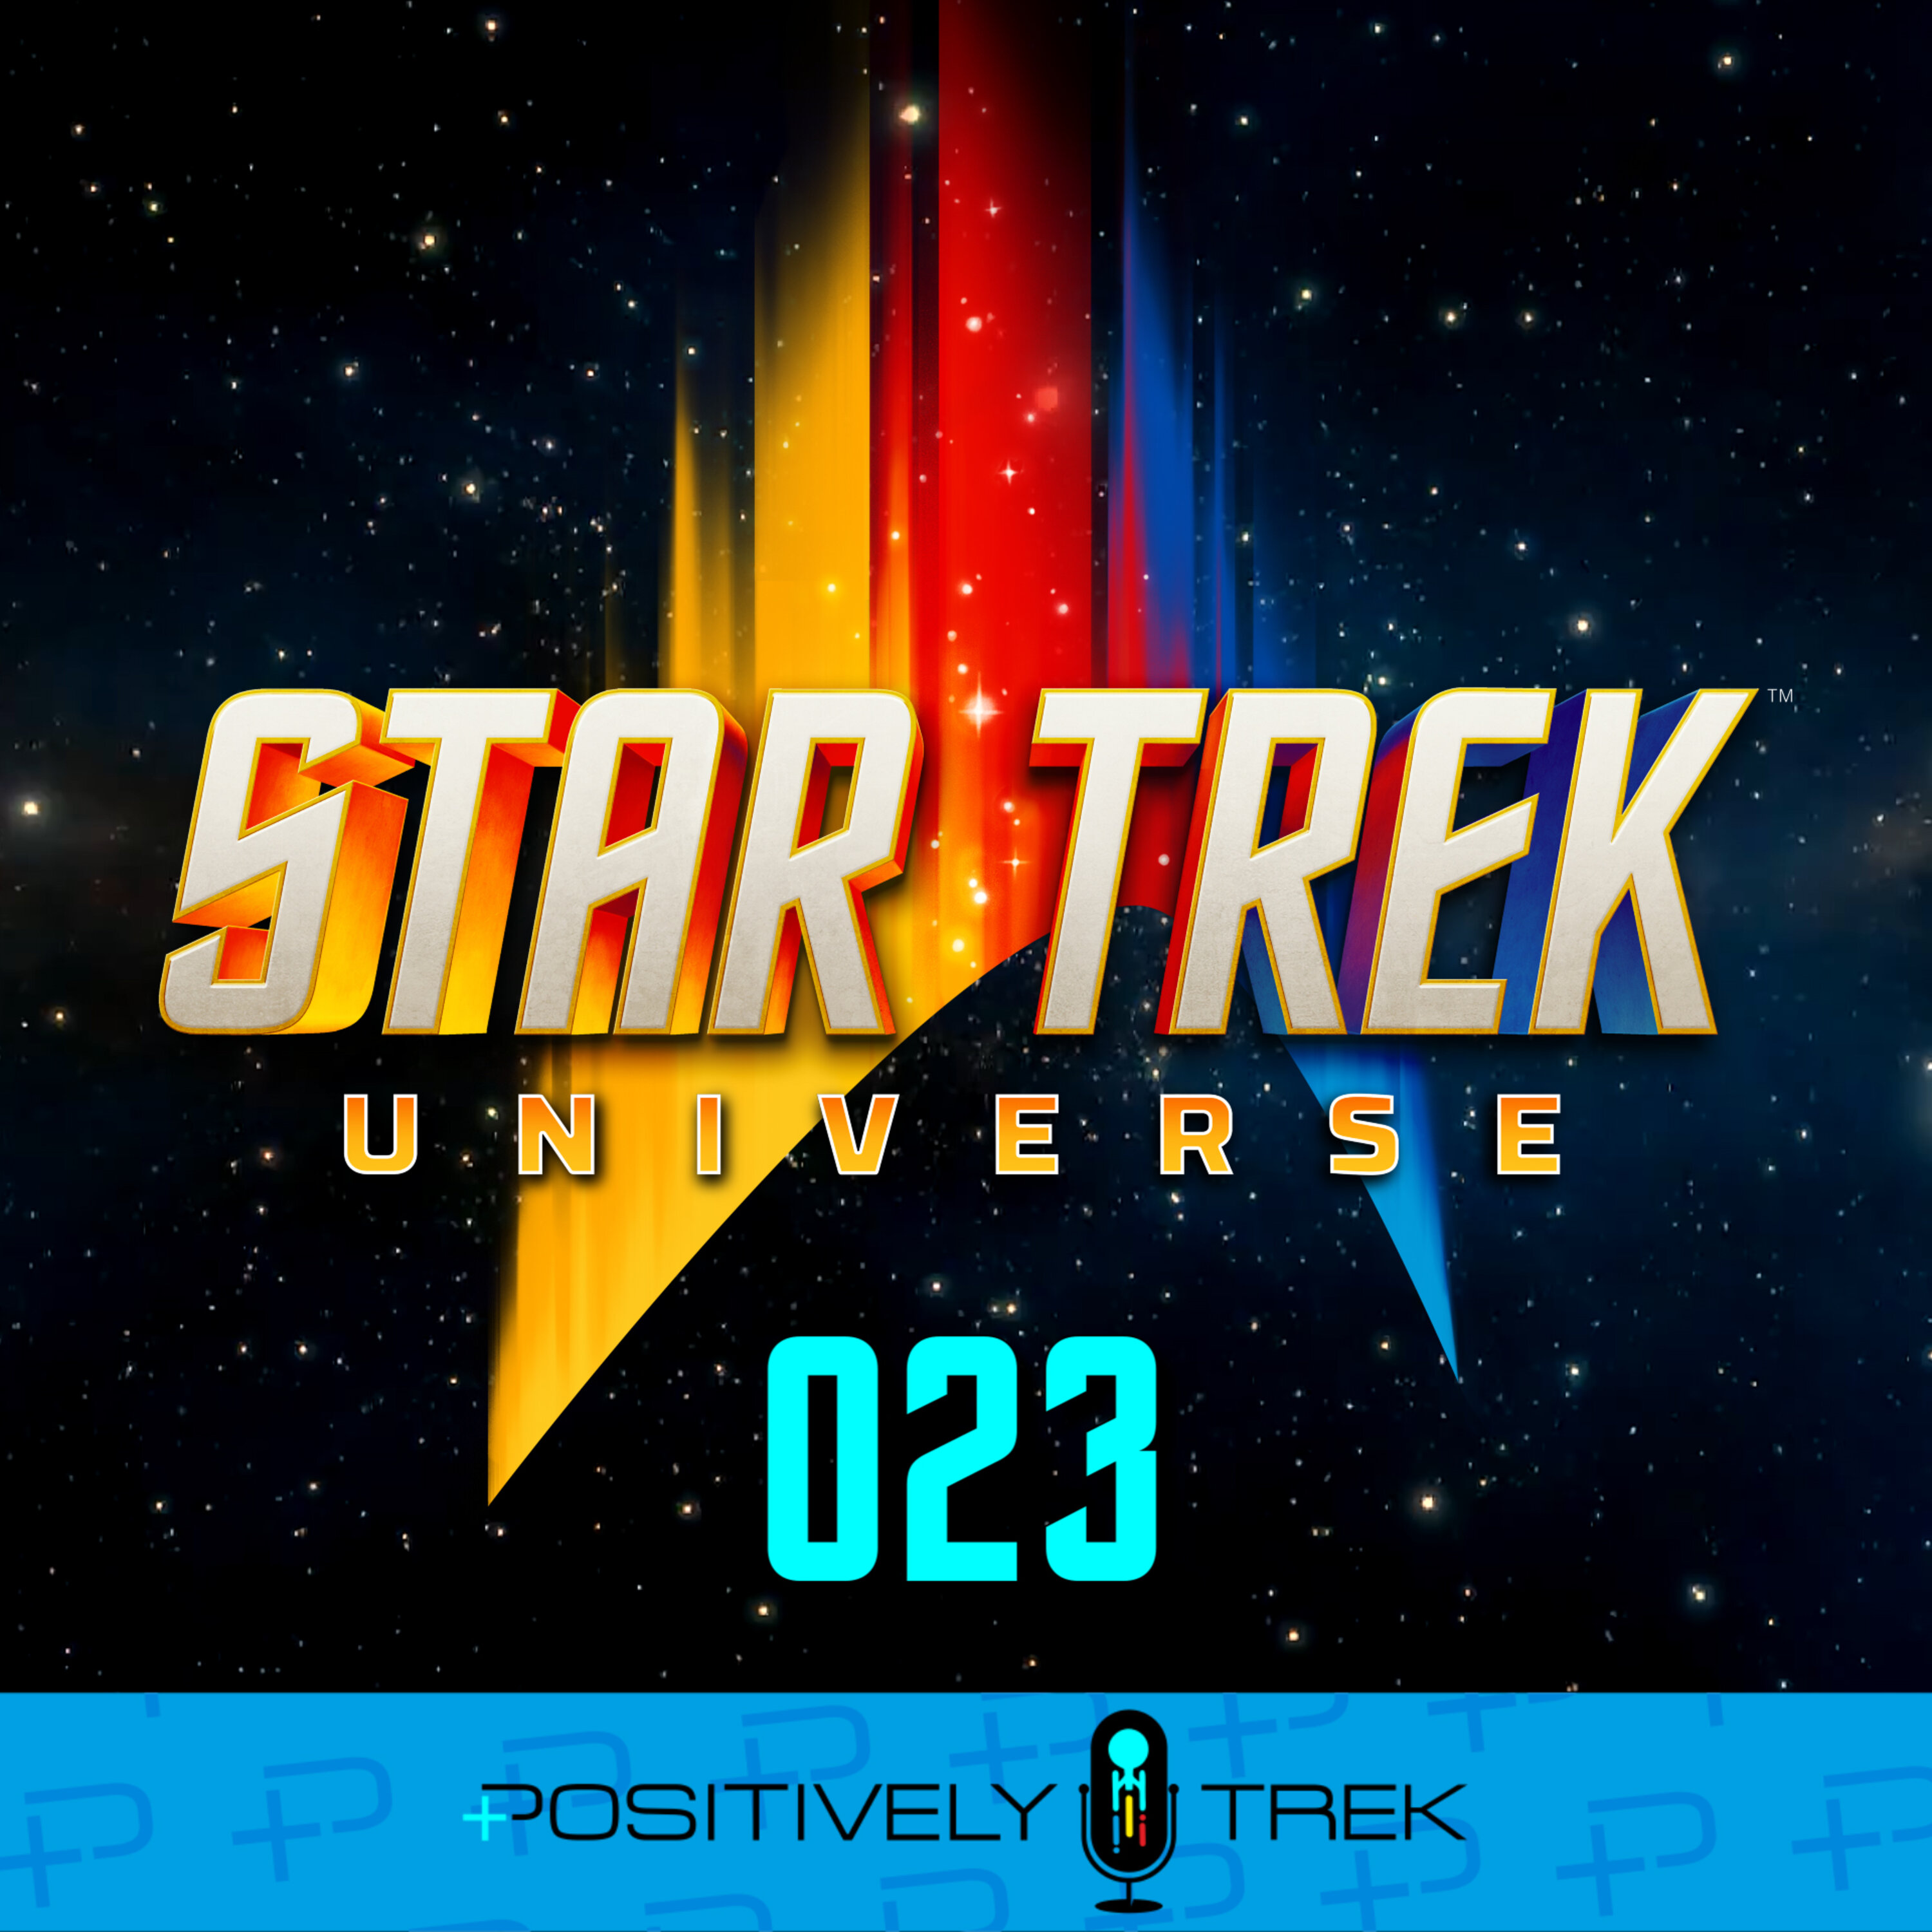 Star Trek Universe at SDCC 2020! Image